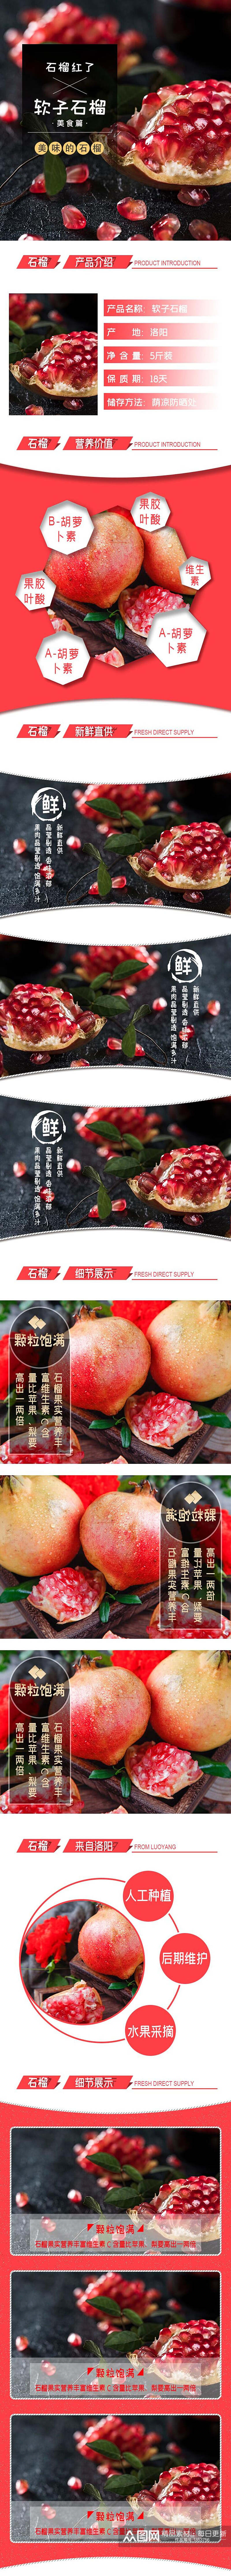 软籽石榴生鲜水果食品电商详情页素材